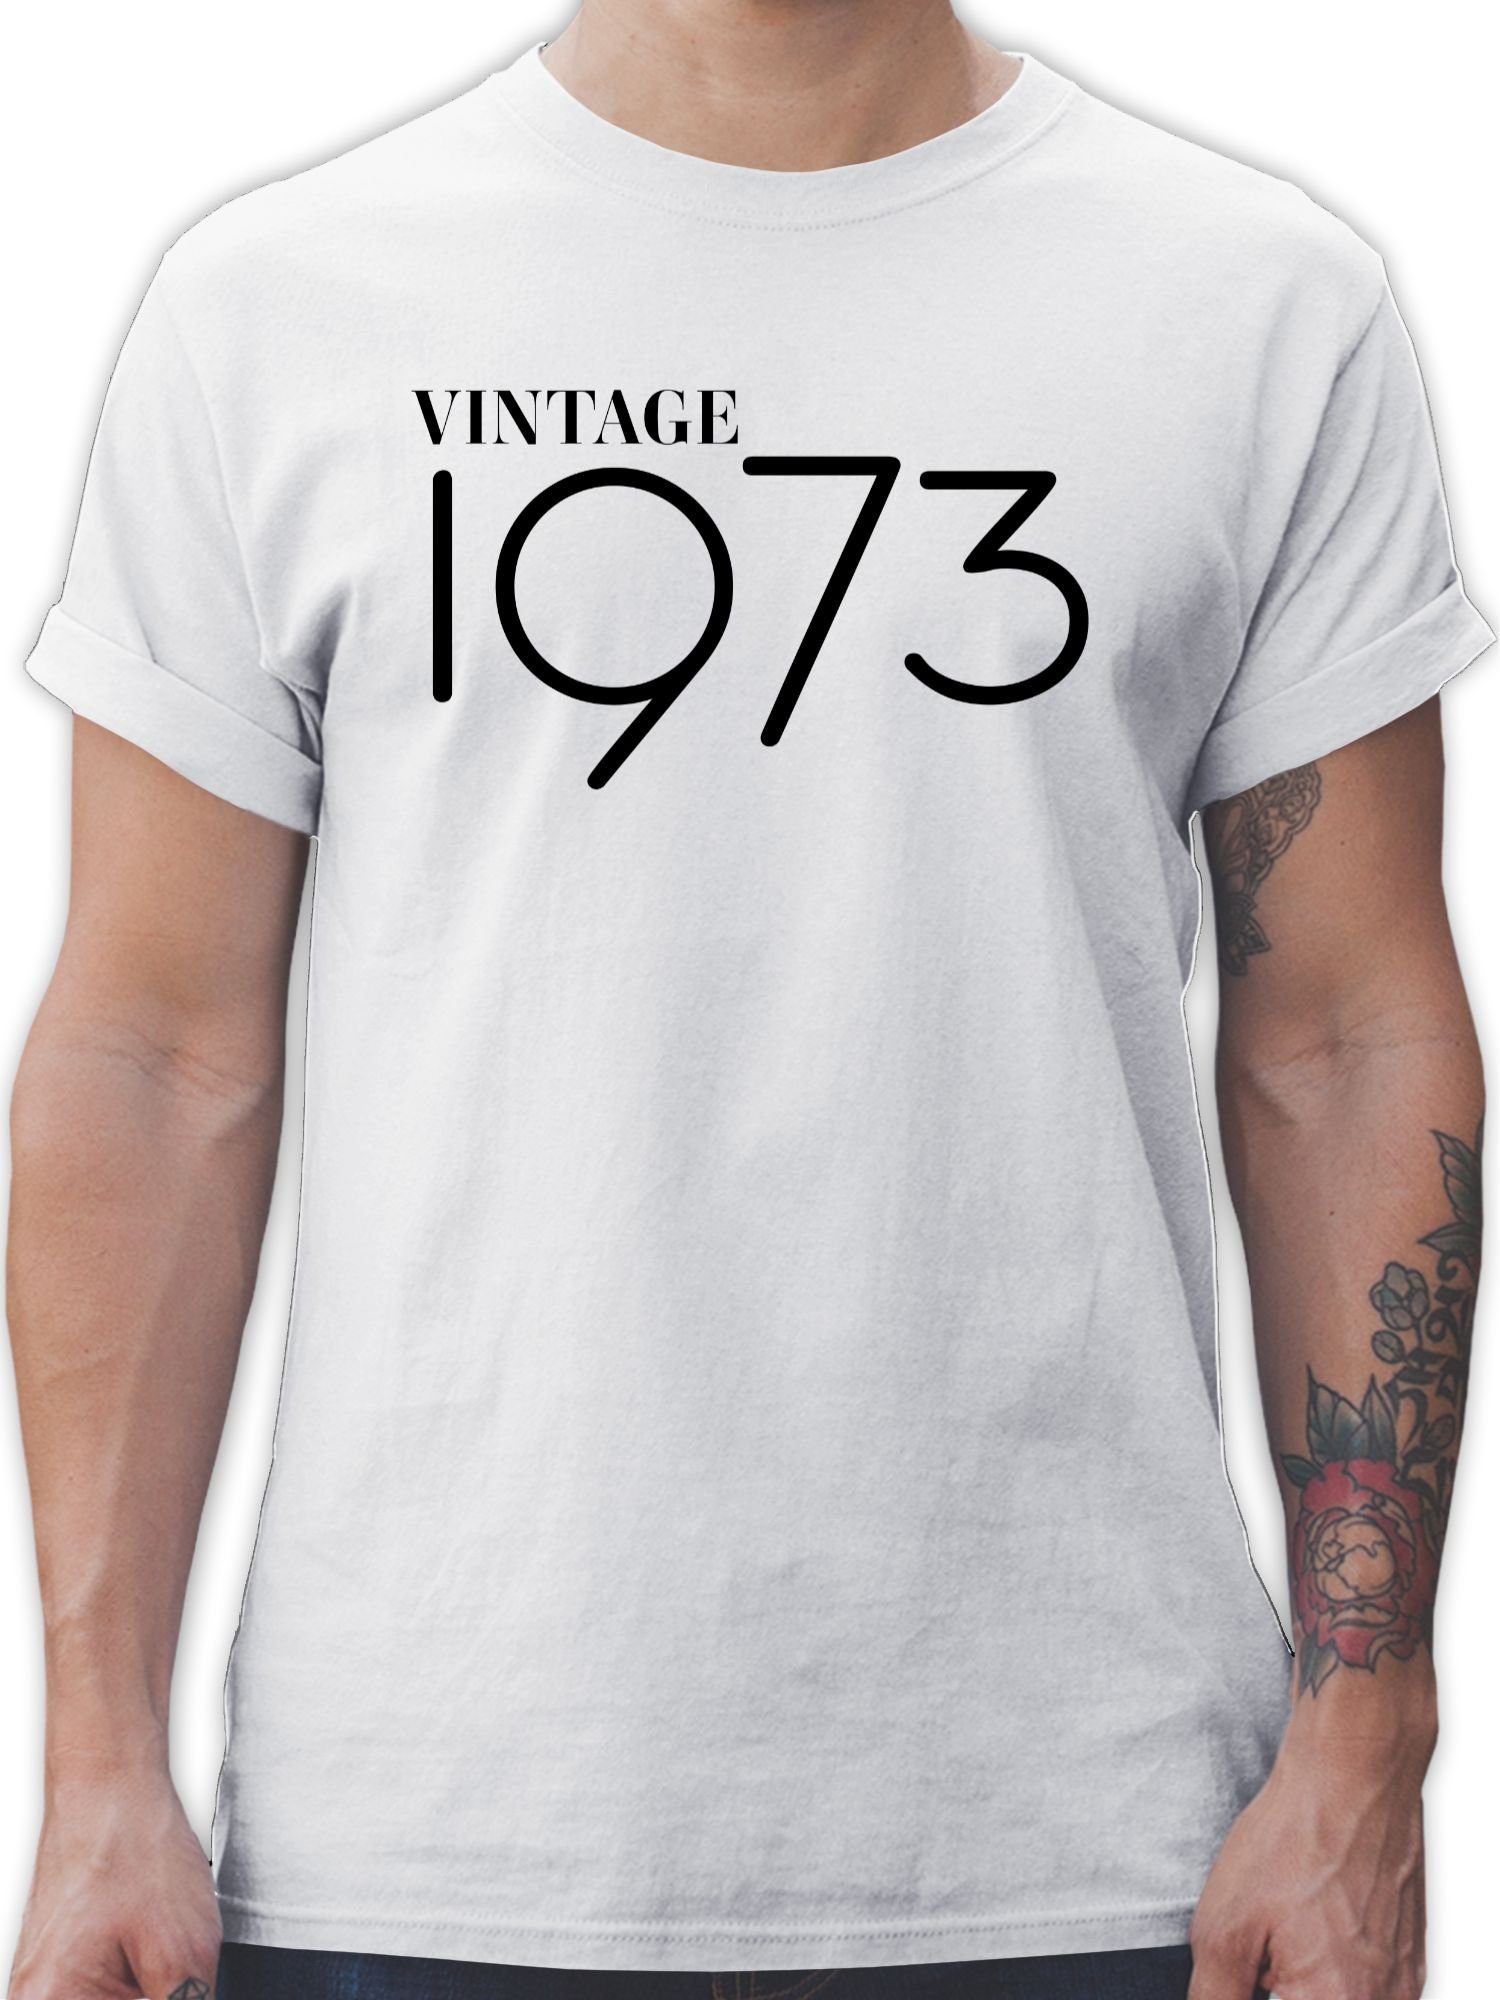 T-Shirt Weiß Geburtstag Vintage Shirtracer 1973 50. 2